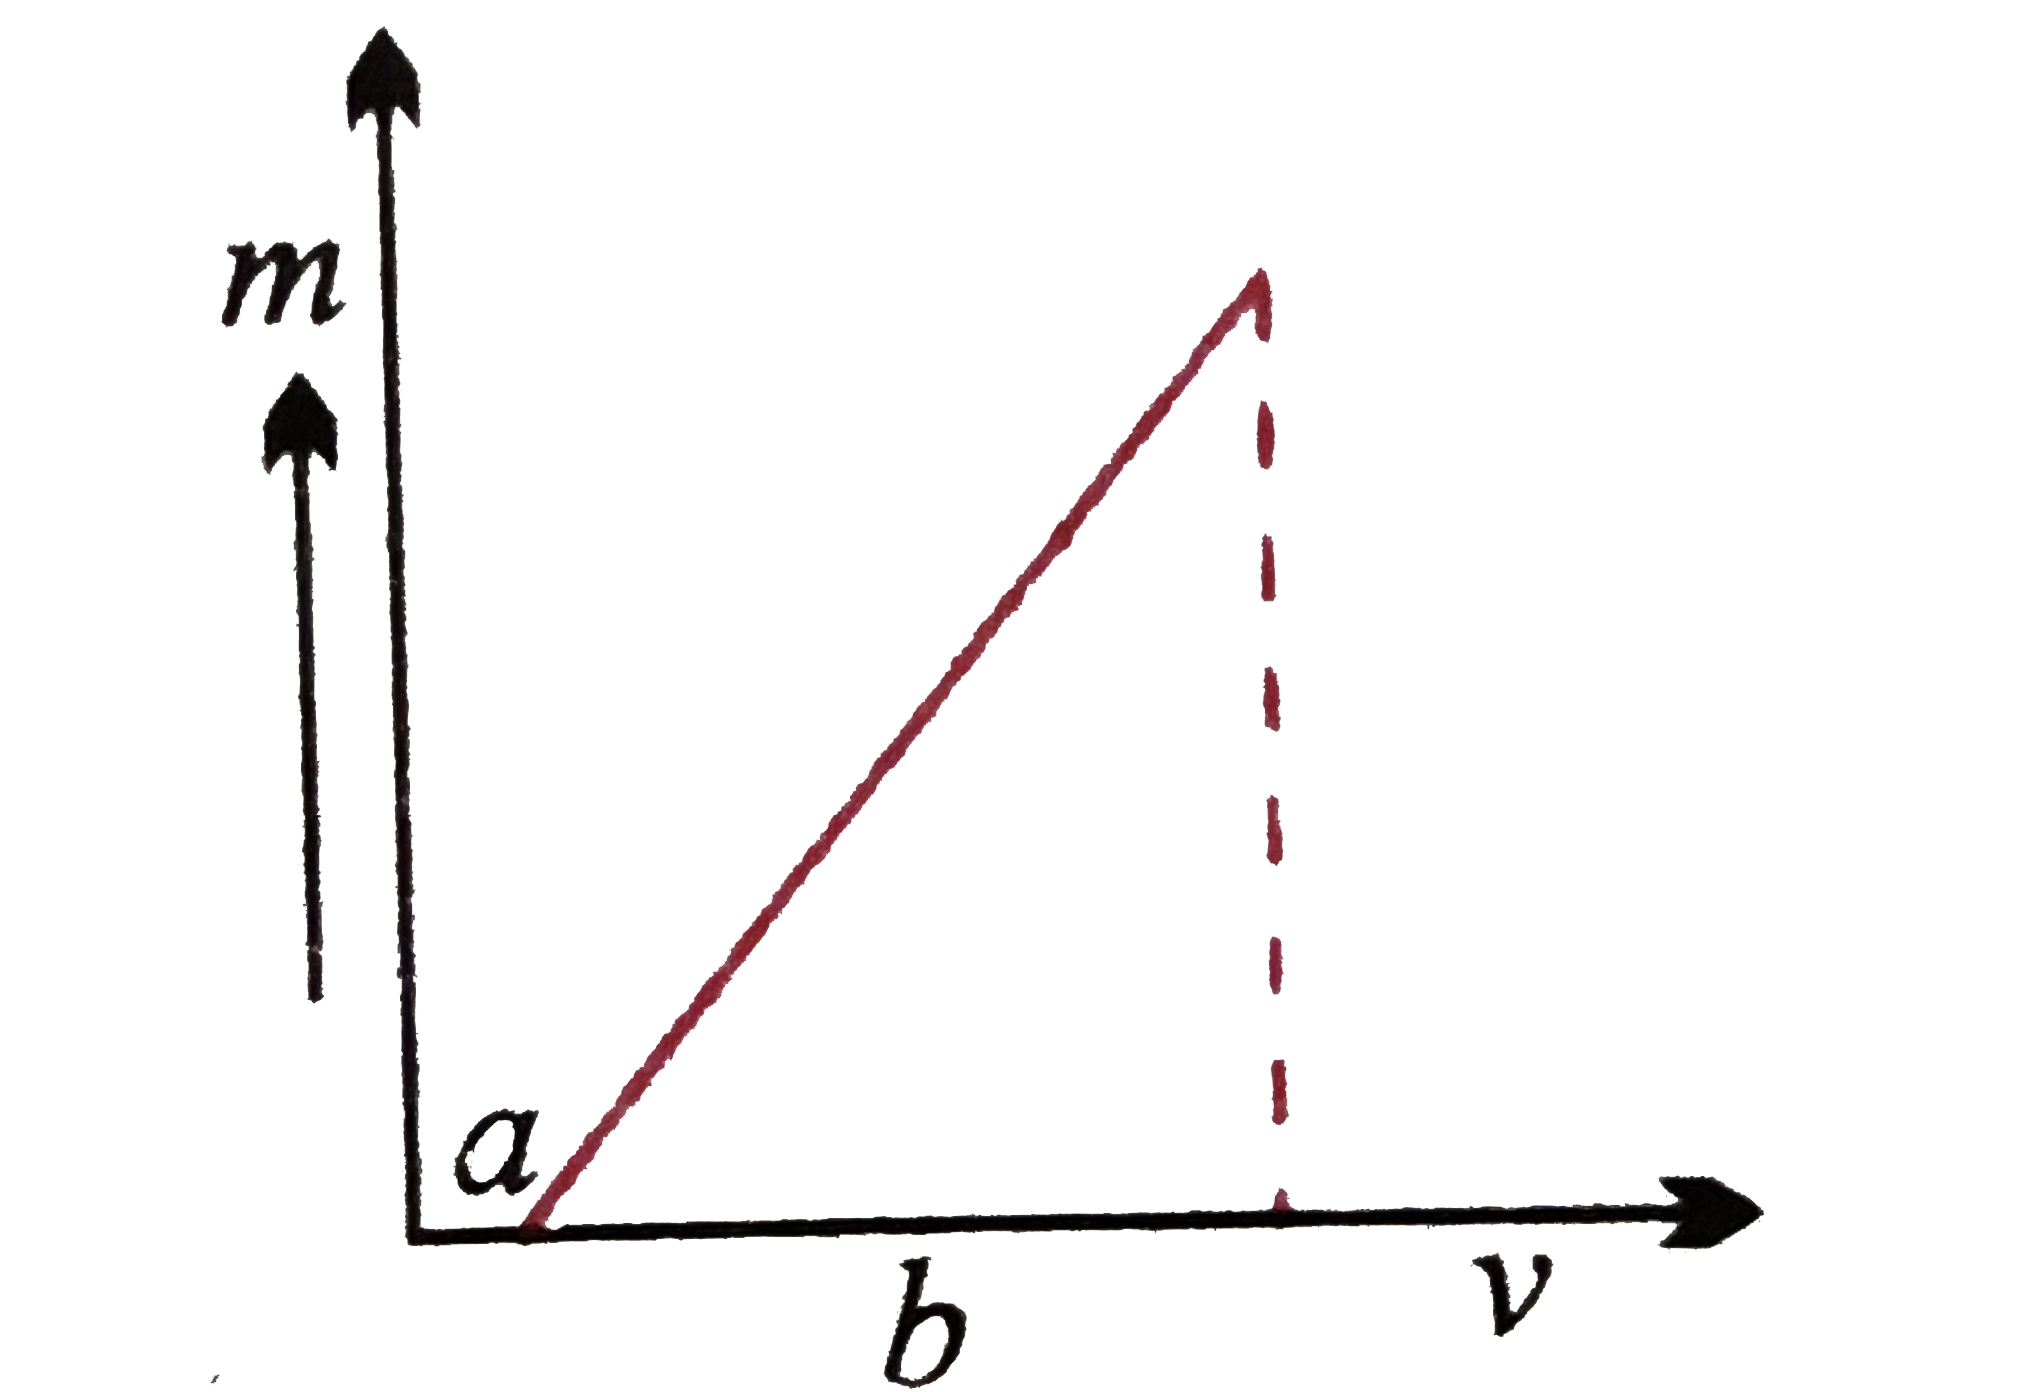 संलग्न चित्र में उत्तल लेंस में बने प्रतिबिम्ब के आवर्धन m और v के मध्य ग्राफ प्रदर्शित किया गया है। लेंस की फोकस-दूरी कितनी होगी?